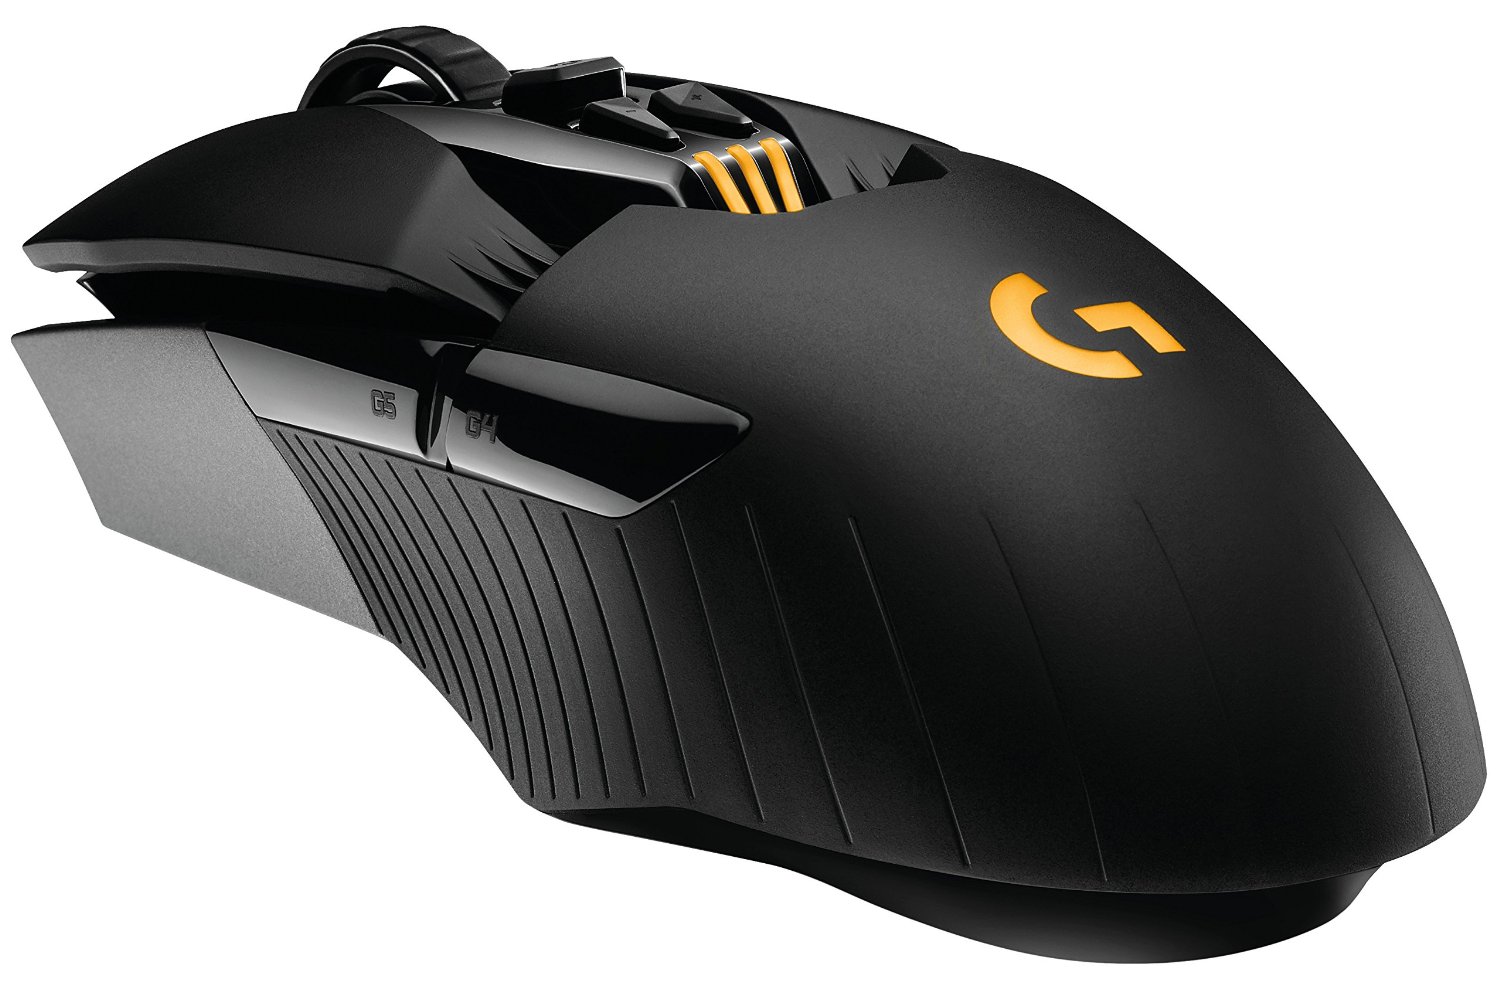 Logitech G900 mouse 1